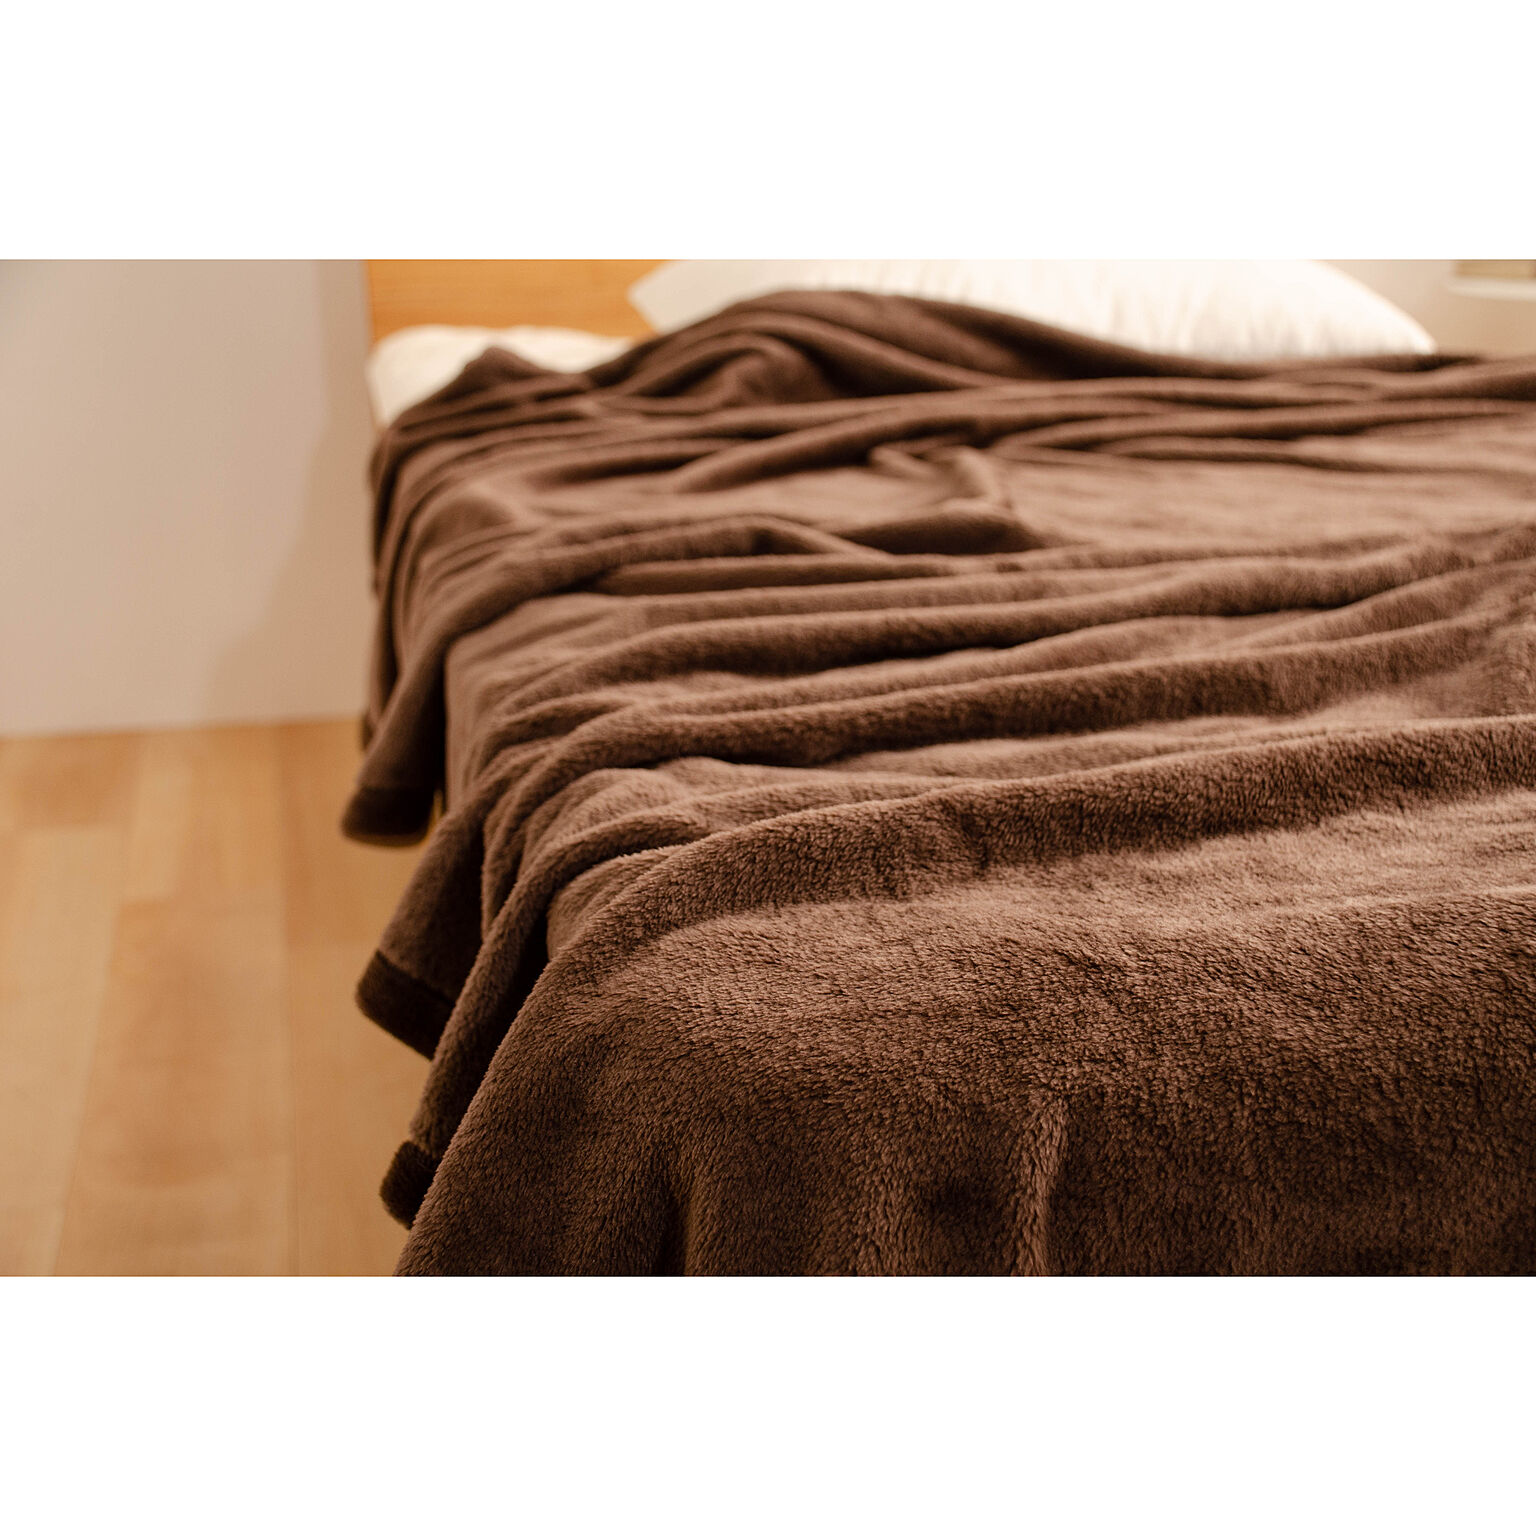 マイクロファイバー毛布 吸湿発熱 ミタスヒート 毛布  軽い 暖かい あったか吸湿発熱毛布